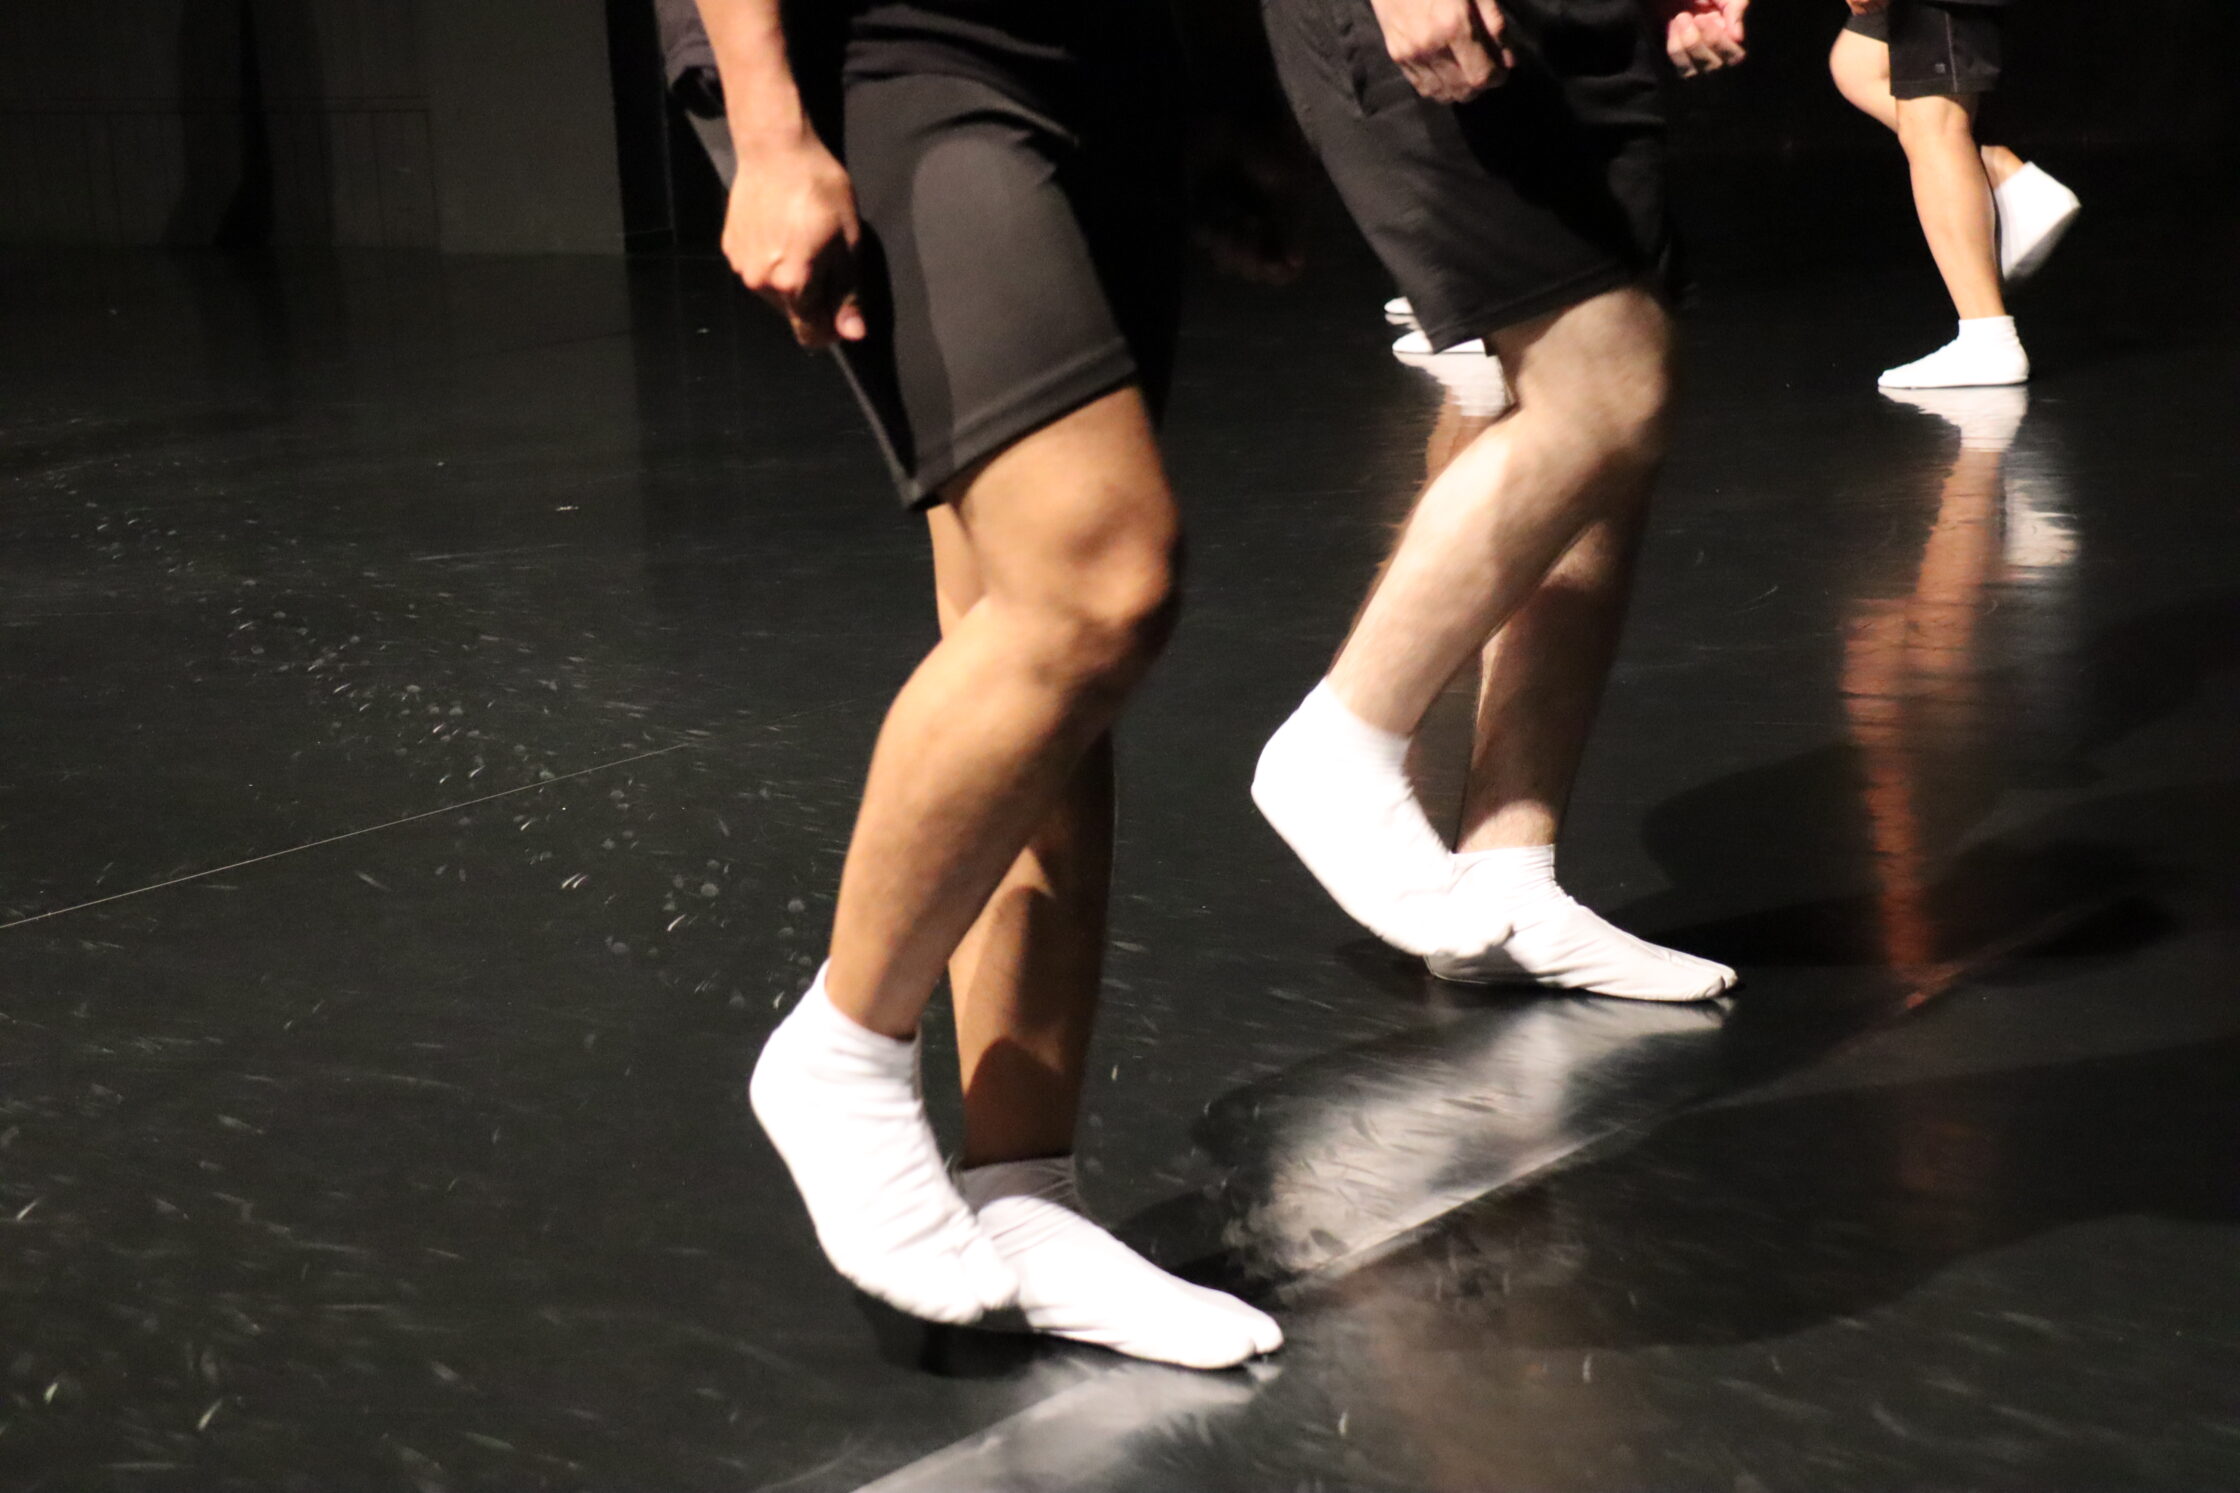 Le gambe di tre persone che indossano tali bianchi ed eseguono il movimento dello stomping